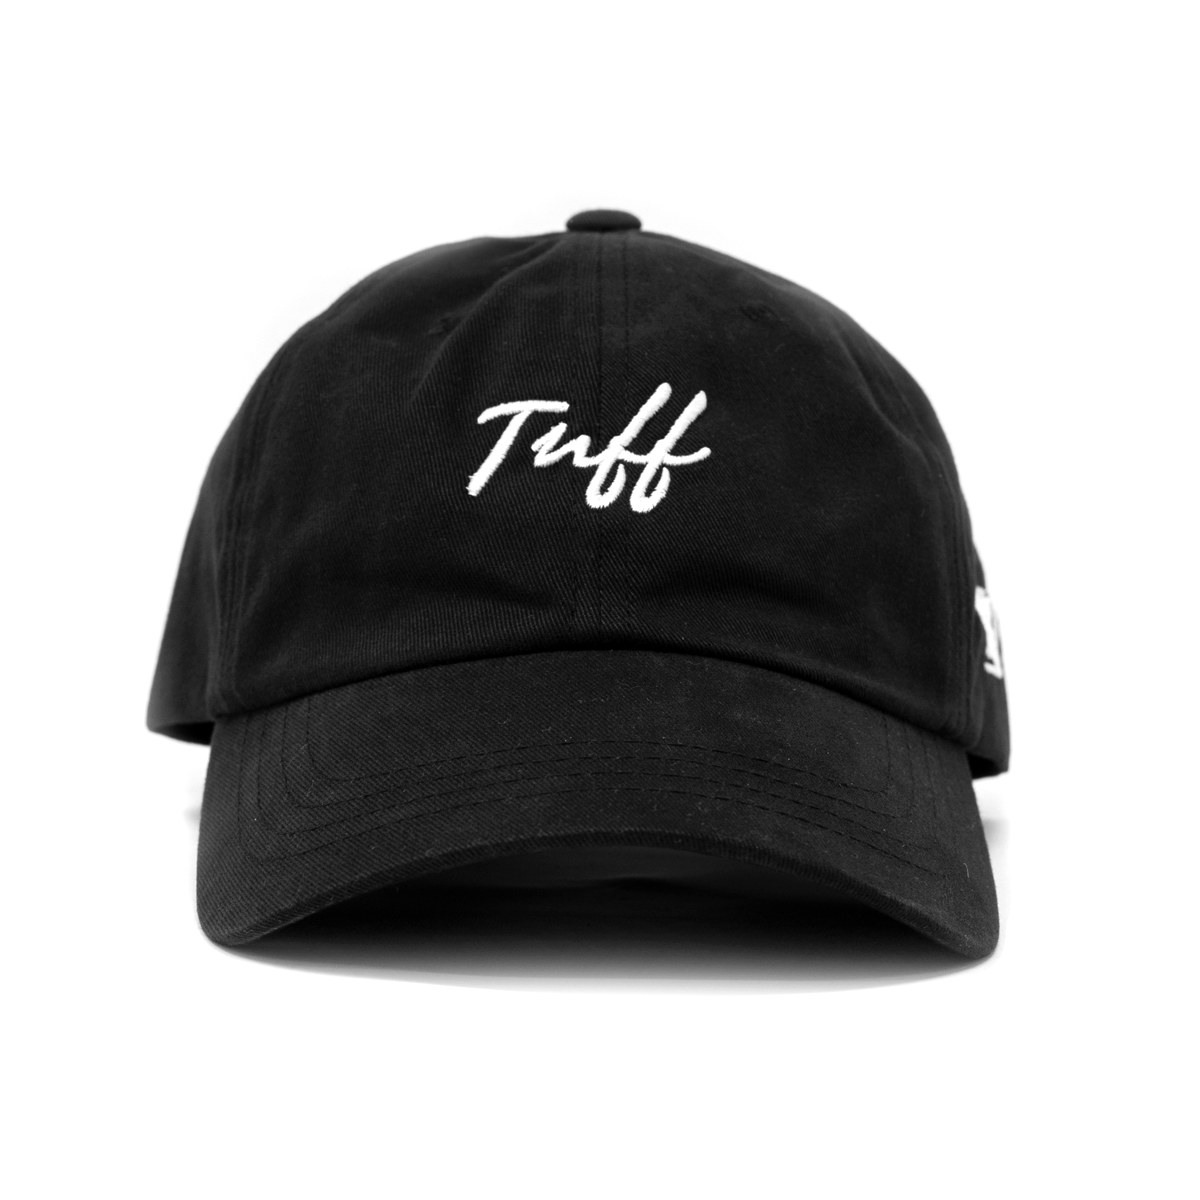 TUFF Thin Script Dad Hat - Black Black TuffWraps.com